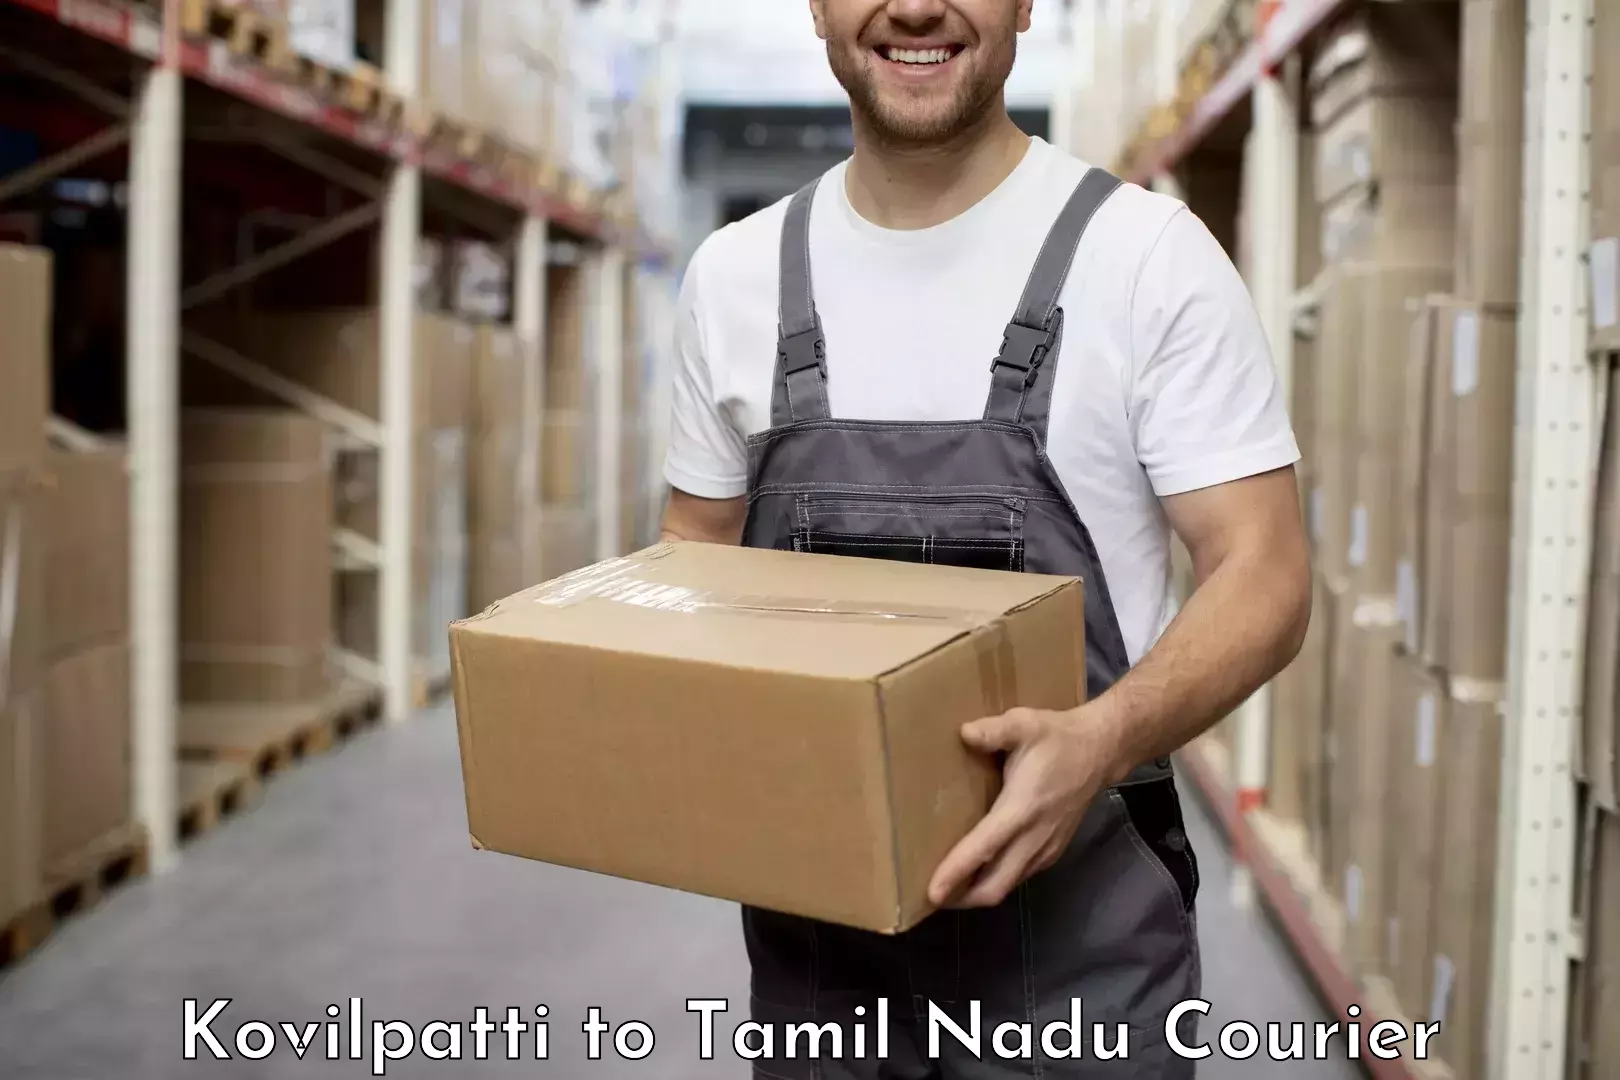 Courier service partnerships Kovilpatti to Rajapalayam